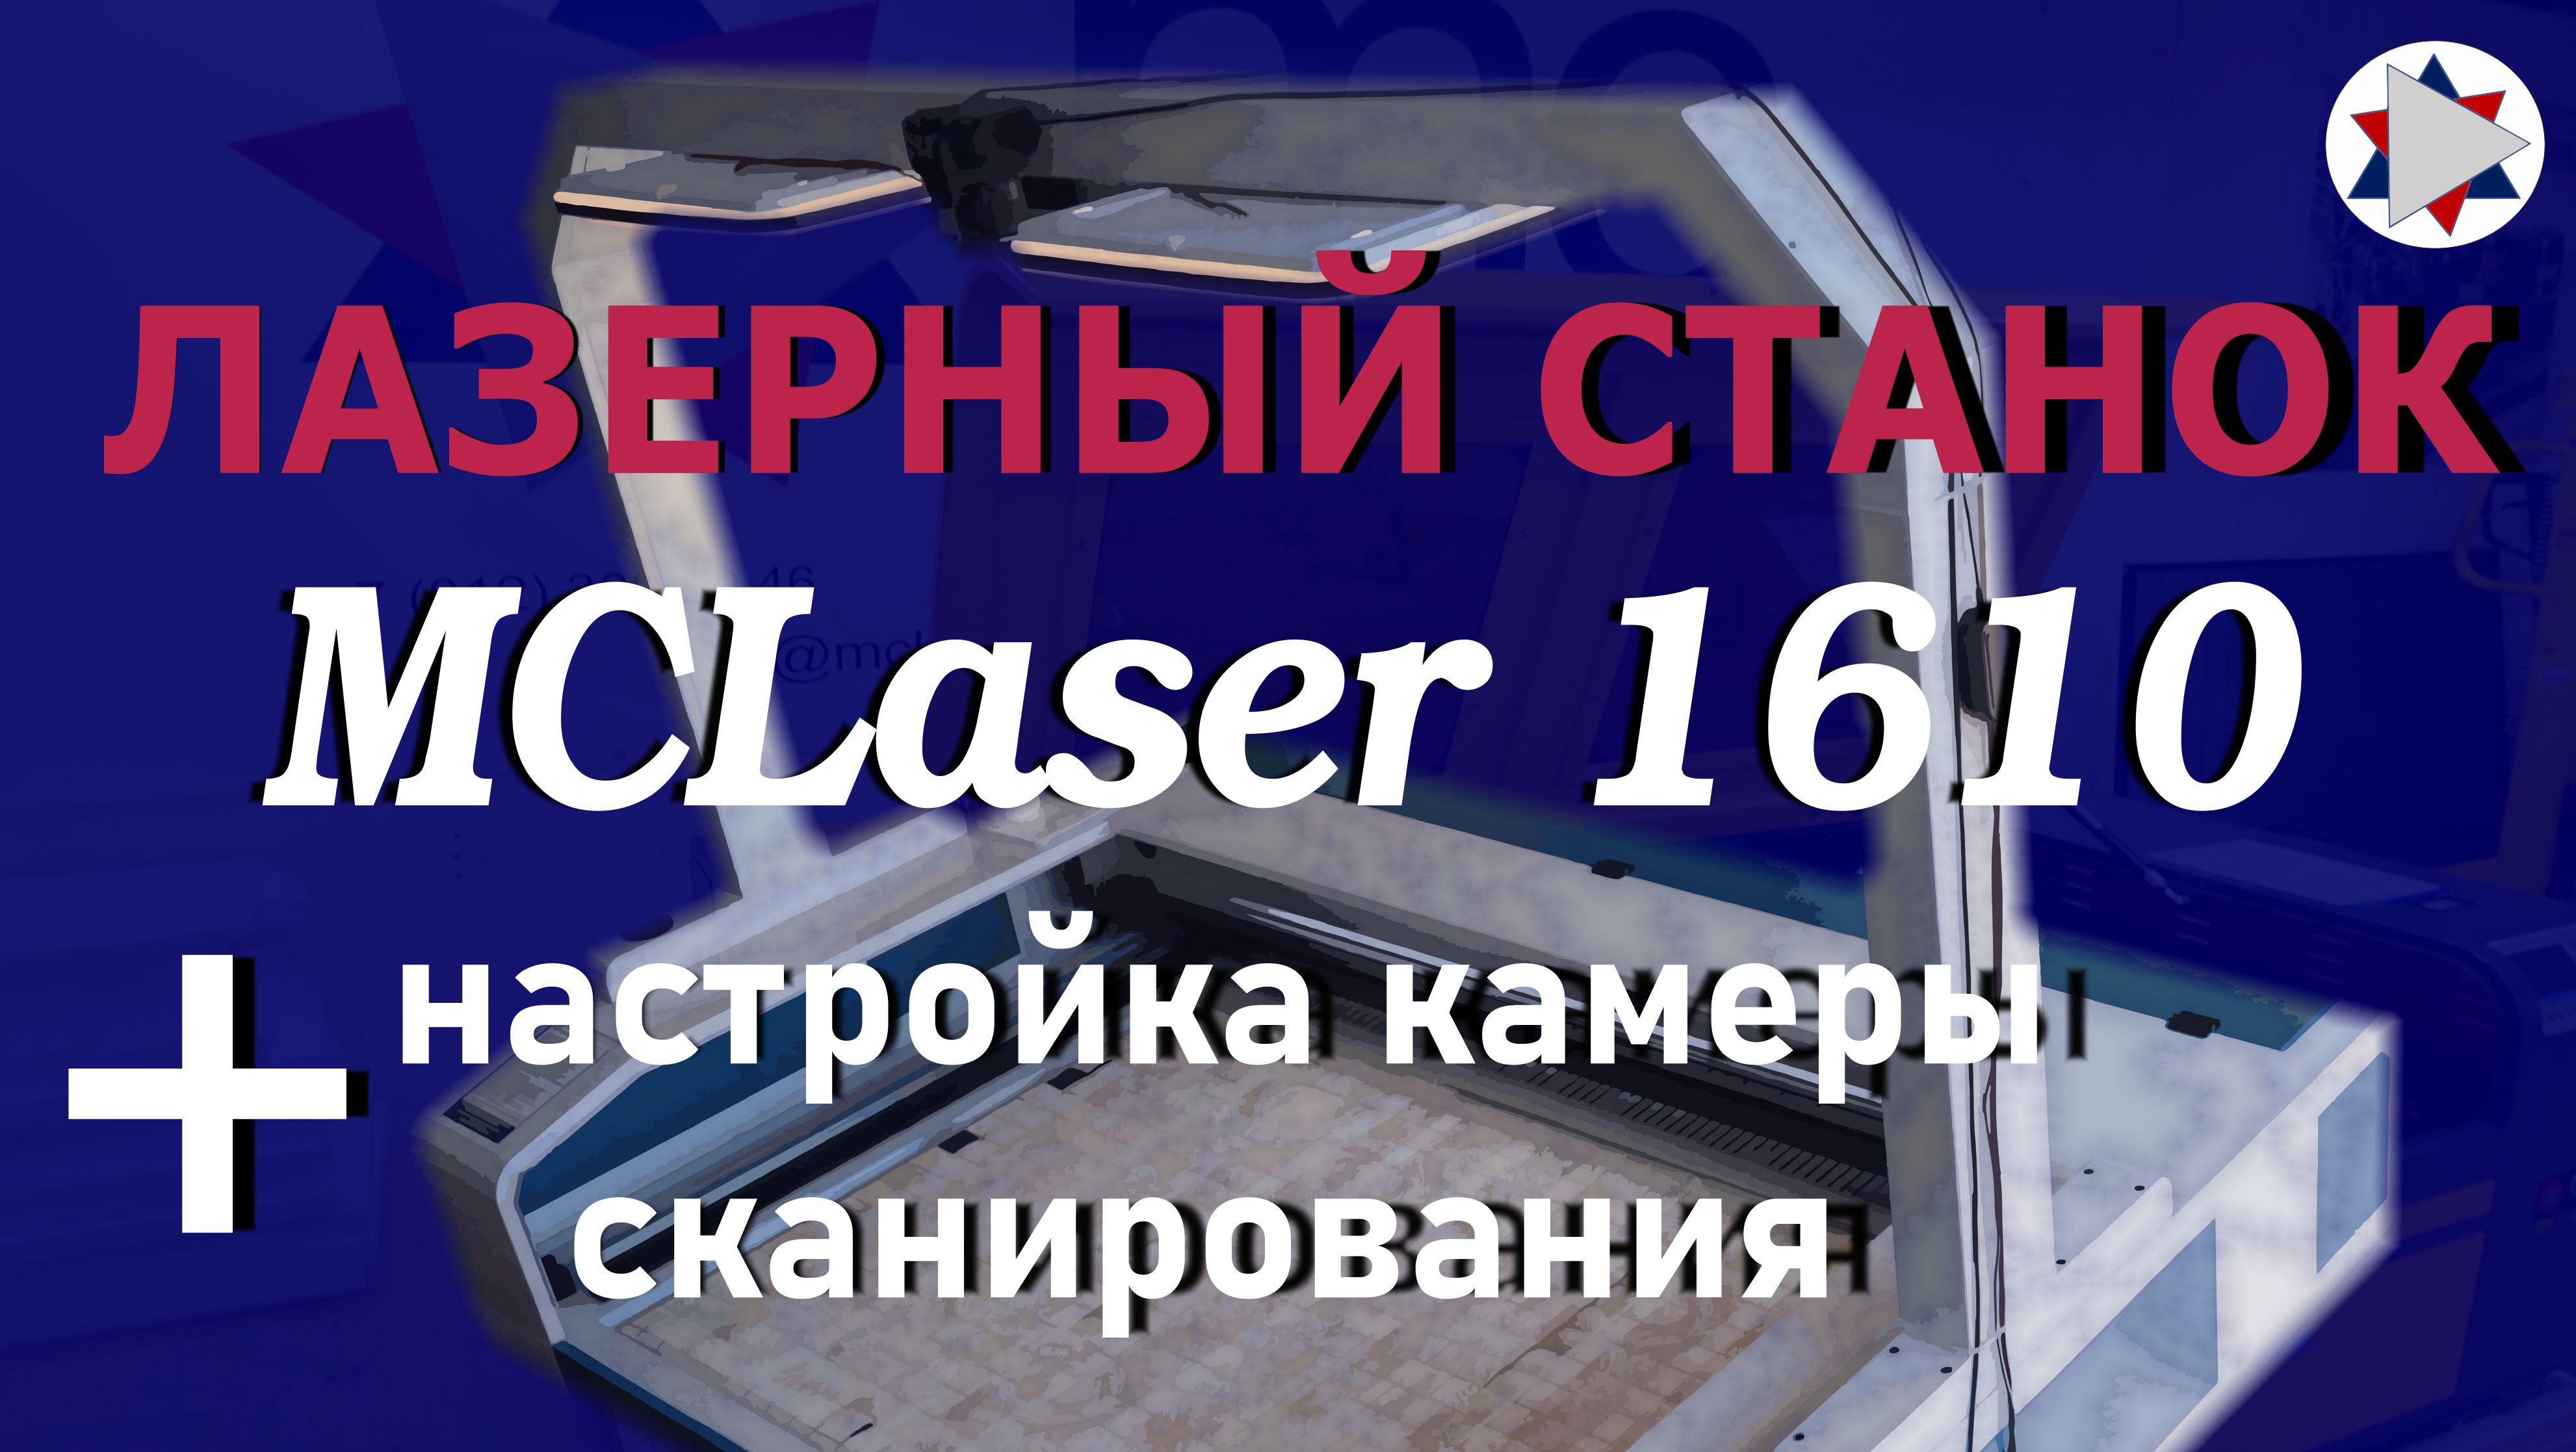 ✅ Лазерный станок MCLaser 1610 + настройка камеры сканирования материала